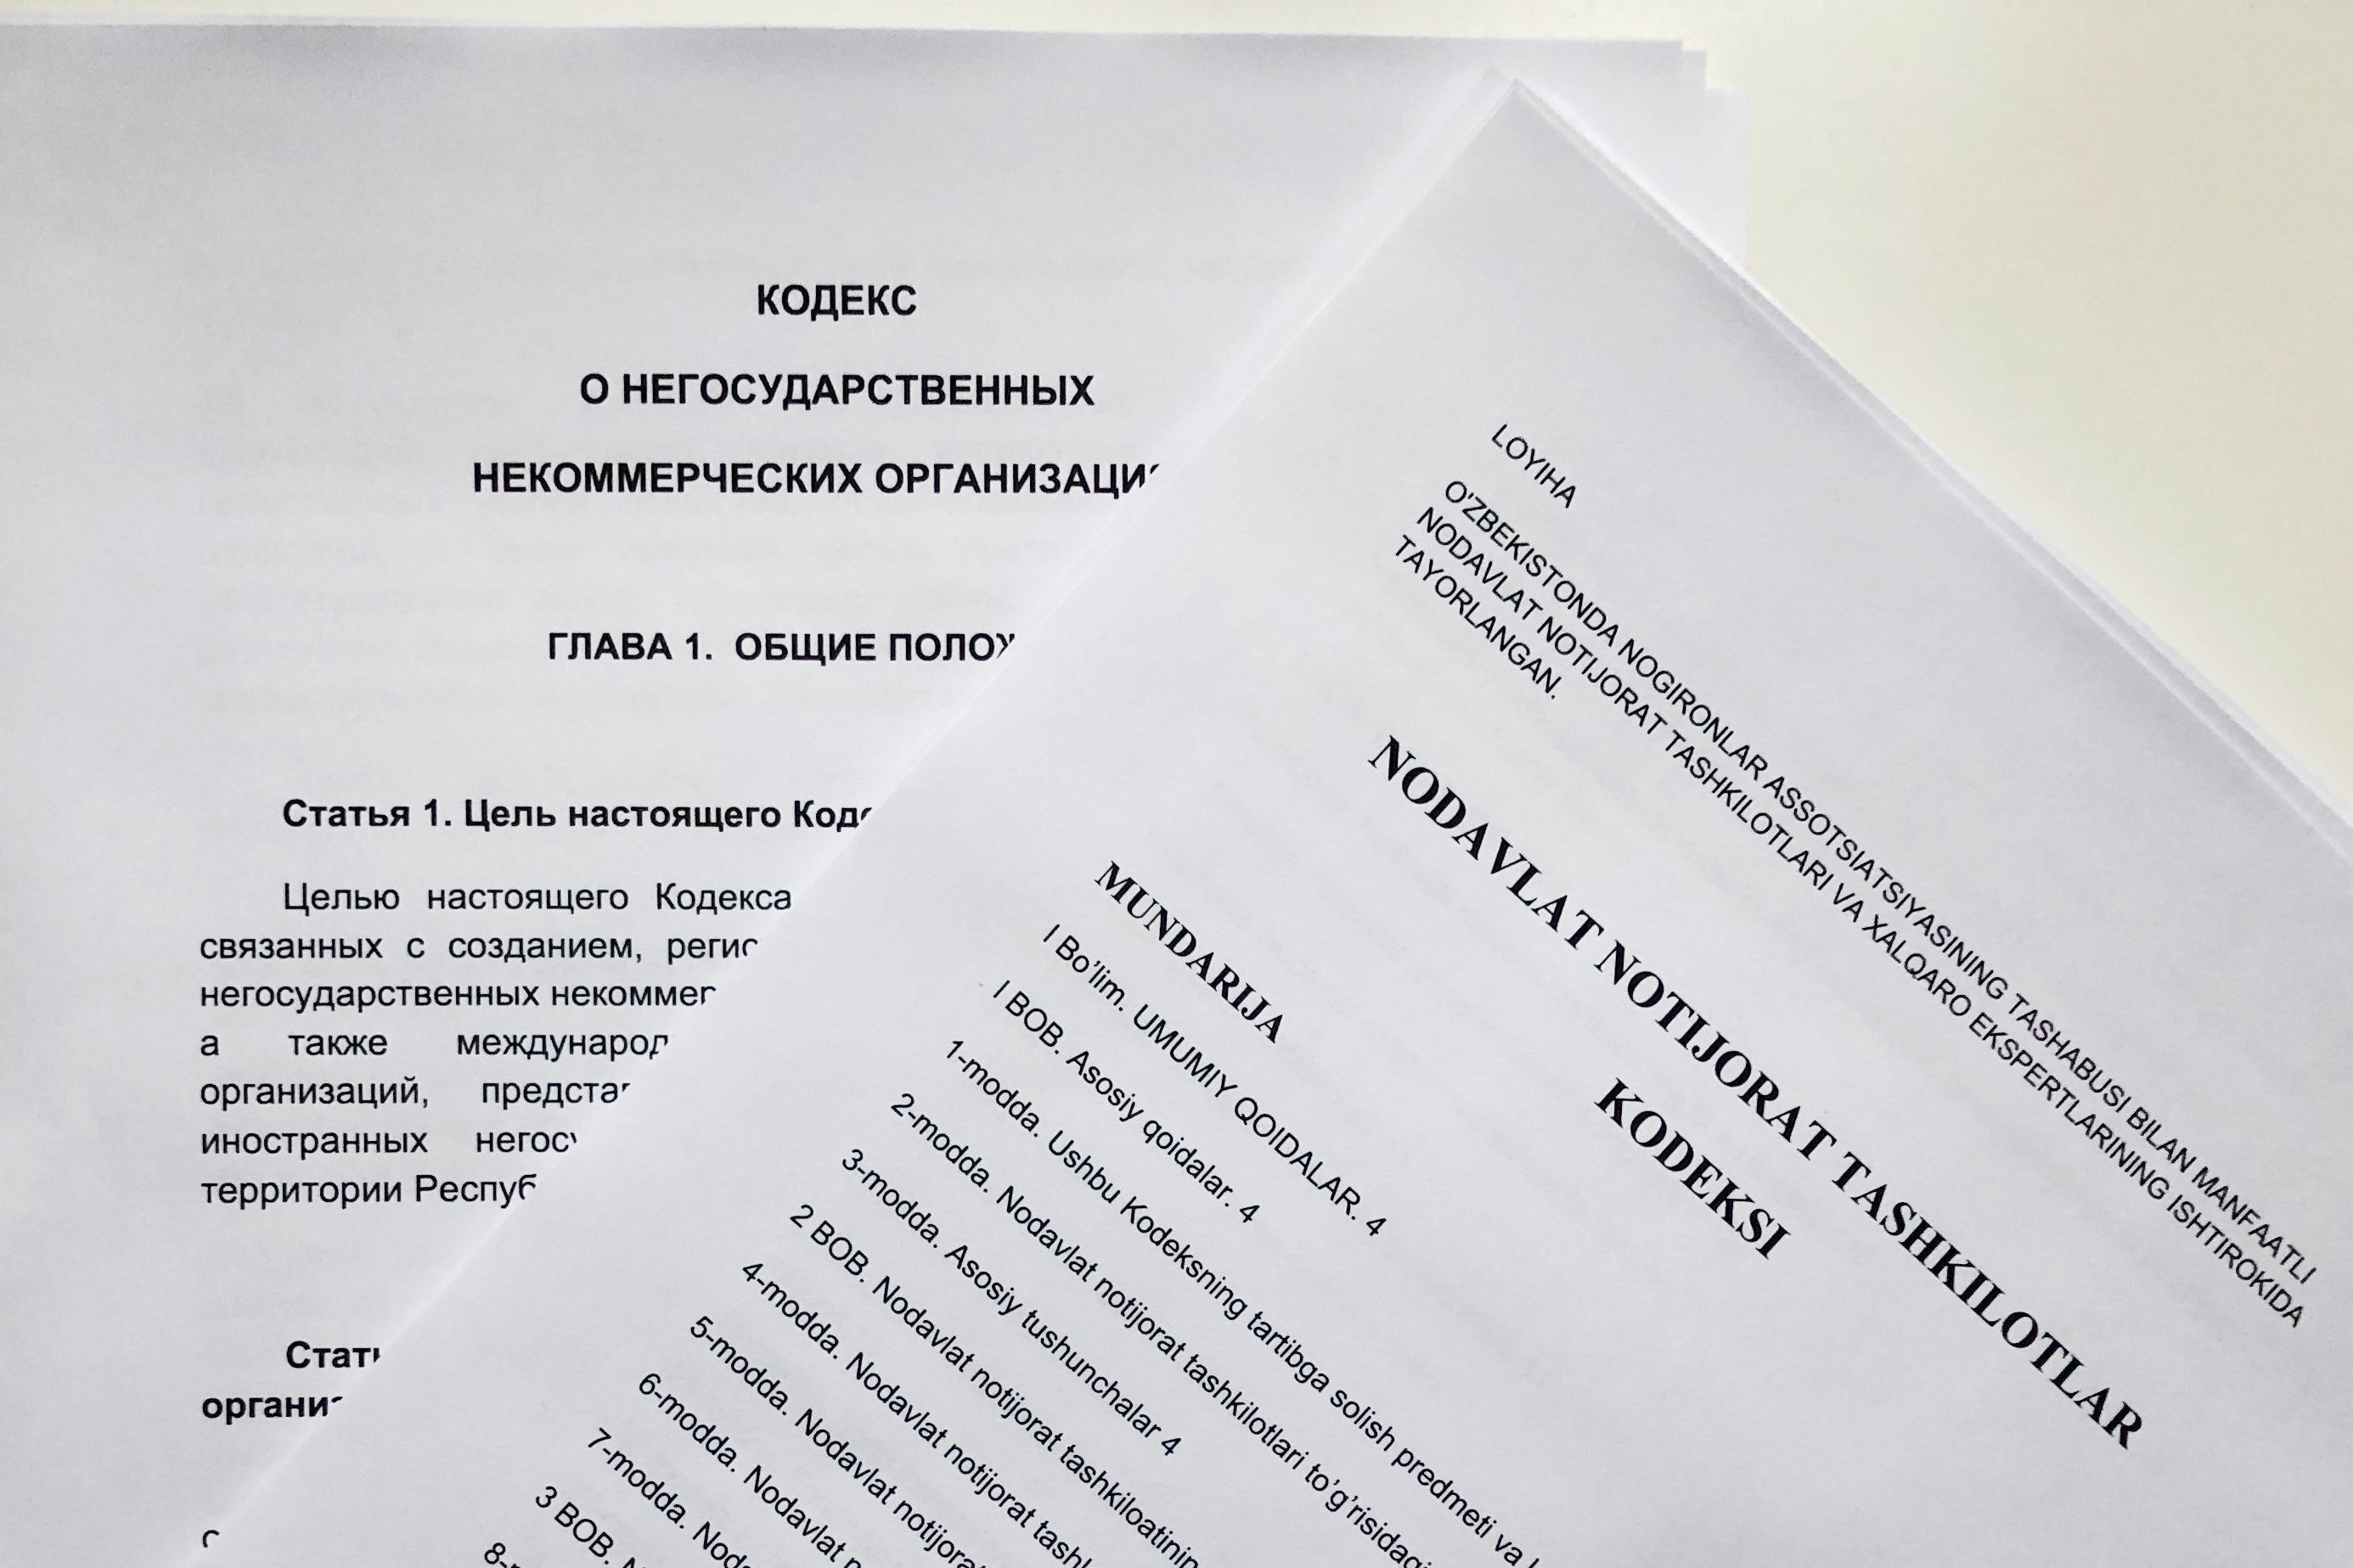 Два альтернативных проекта кодекса, разработанных представителями местных НПО и международными экспертами на русском и узбекском.